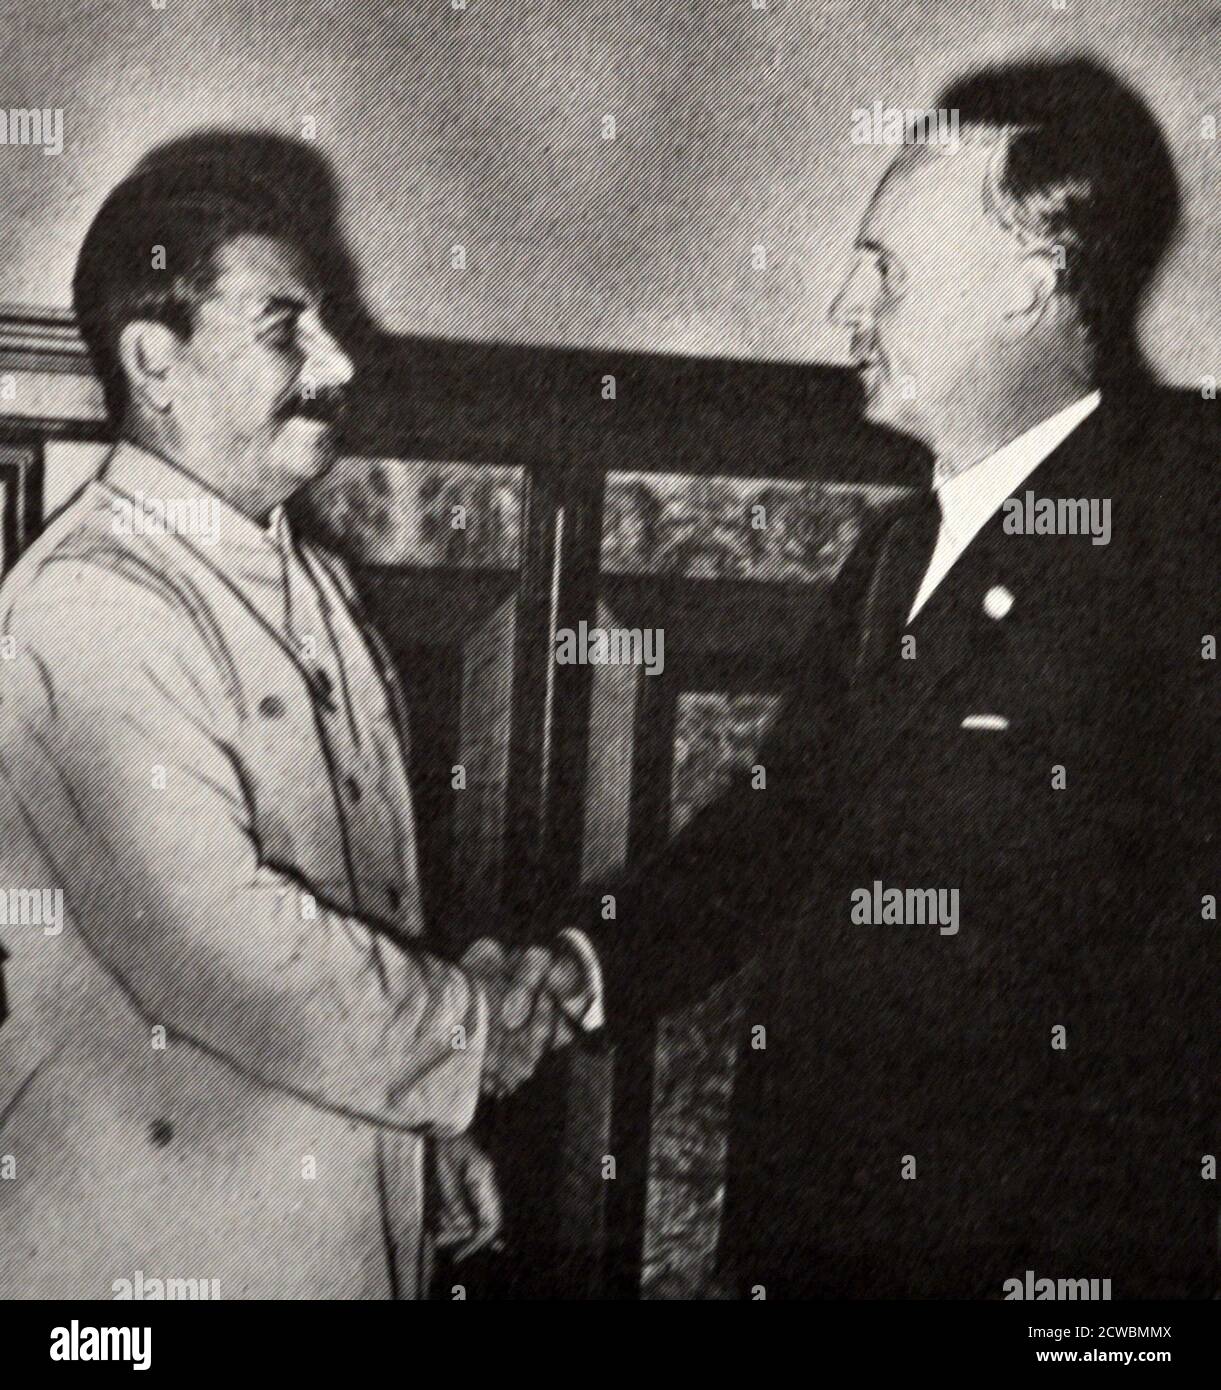 Fotografia in bianco e nero del leader sovietico Josef Stalin (1878-1953) e del ministro degli Esteri tedesco Joachim von Ribbentrop (1893-1946) che si stringono le mani dopo la firma del Patto tedesco-russo, 23 agosto 1939. Foto Stock